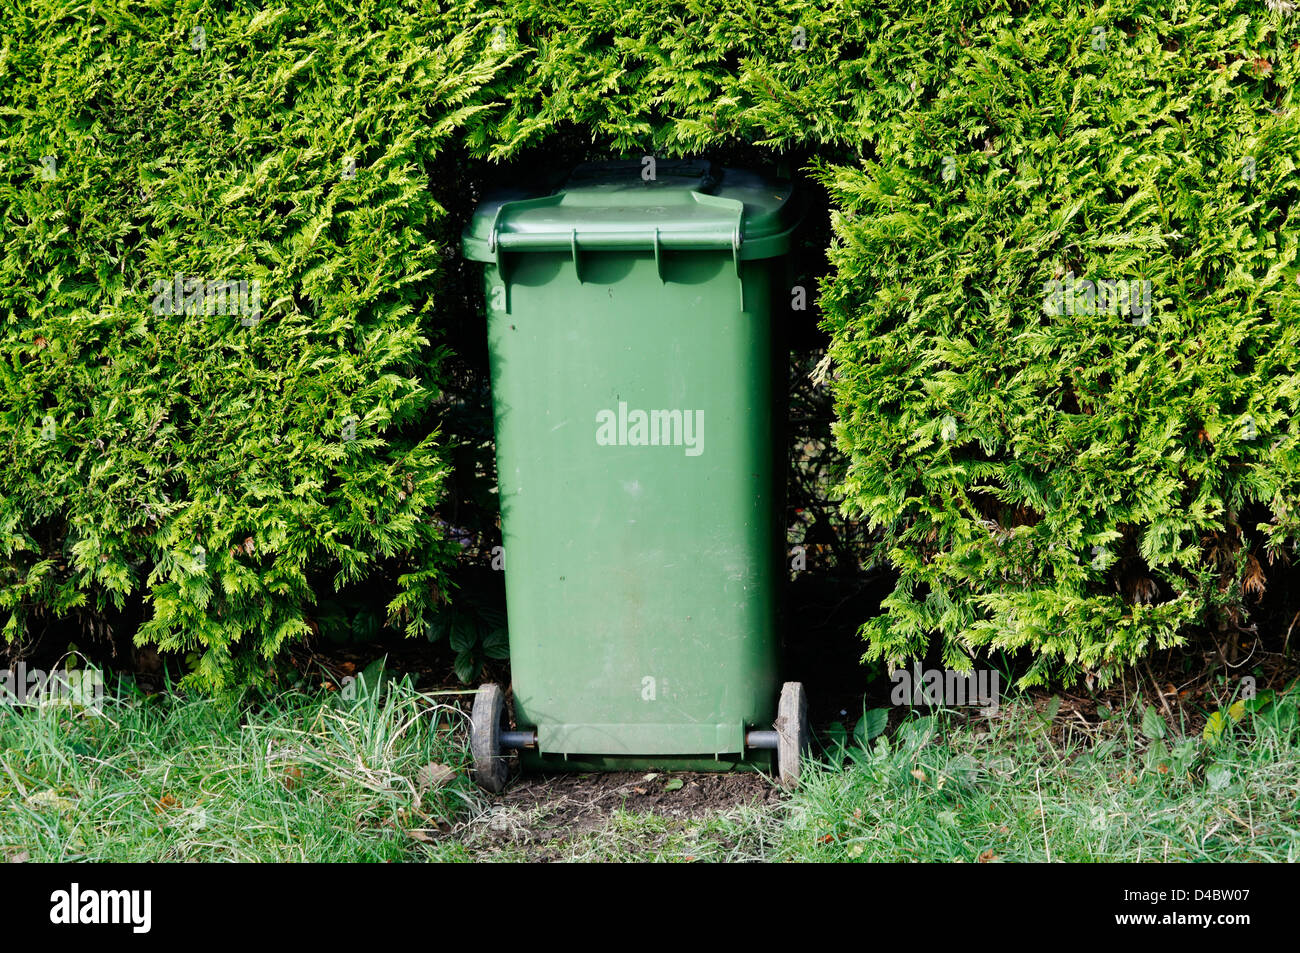 A wheelie bin in a hole in a hedge Stock Photo